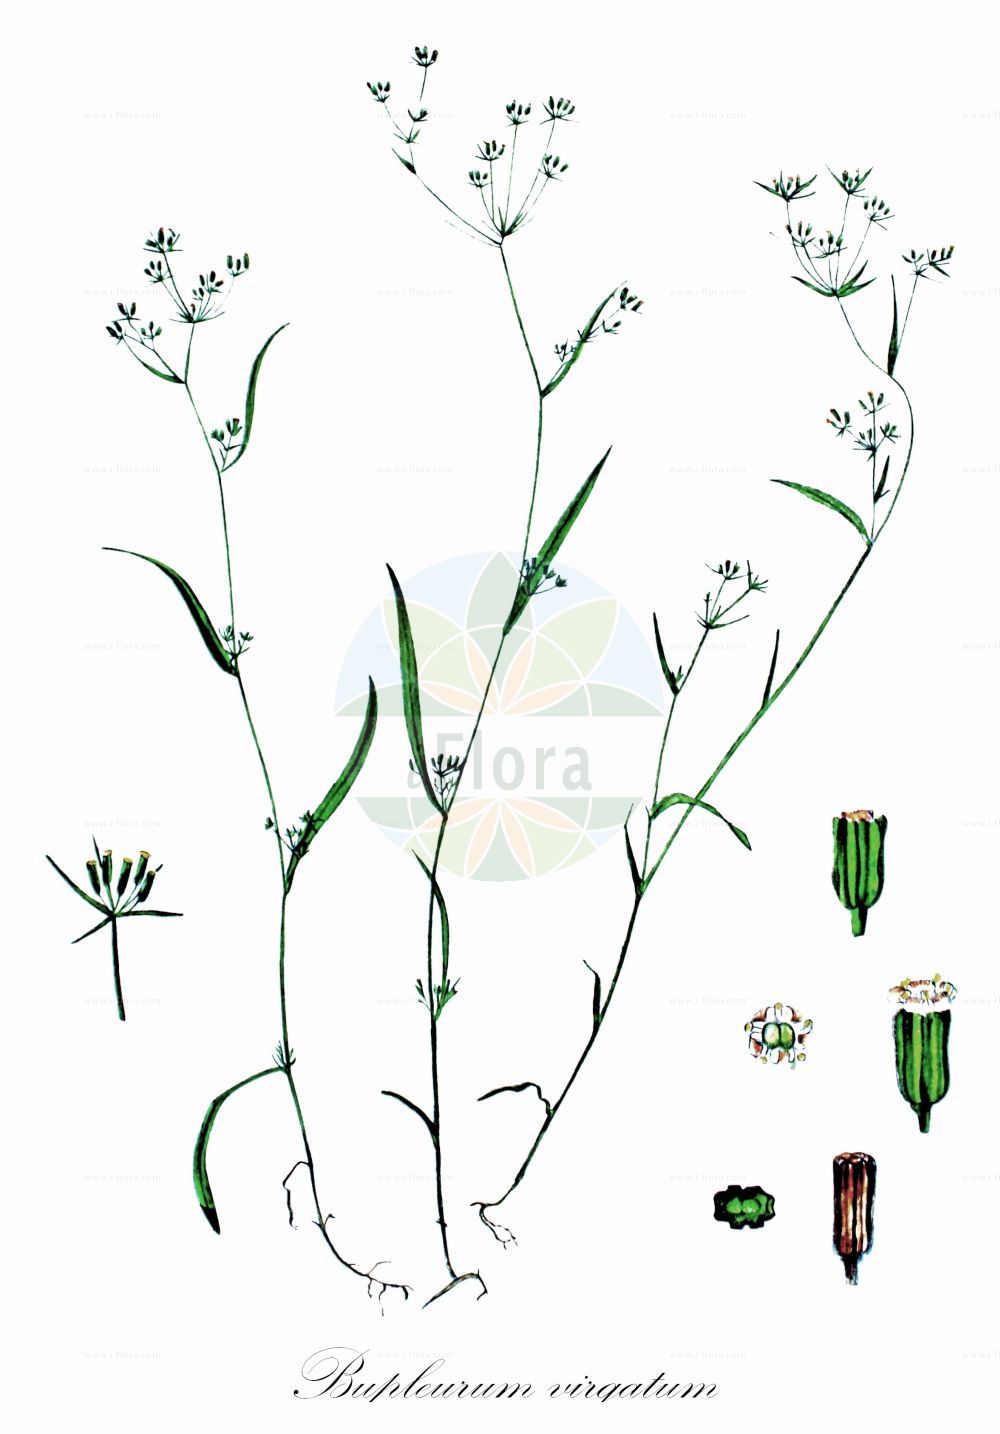 Historische Abbildung von Bupleurum virgatum (Ruten-Hasenohr - Gerard's Hare's-ear). Das Bild zeigt Blatt, Bluete, Frucht und Same. ---- Historical Drawing of Bupleurum virgatum (Ruten-Hasenohr - Gerard's Hare's-ear). The image is showing leaf, flower, fruit and seed.(Bupleurum virgatum,Ruten-Hasenohr,Gerard's Hare's-ear,Bupleurum virgatum,Ruten-Hasenohr,Gerard's Hare's-ear,Bupleurum,Hasenohr,Hare's Ear,Apiaceae,Doldengewächse,Carrot family,Blatt,Bluete,Frucht,Same,leaf,flower,fruit,seed,Kops (1800-1934))